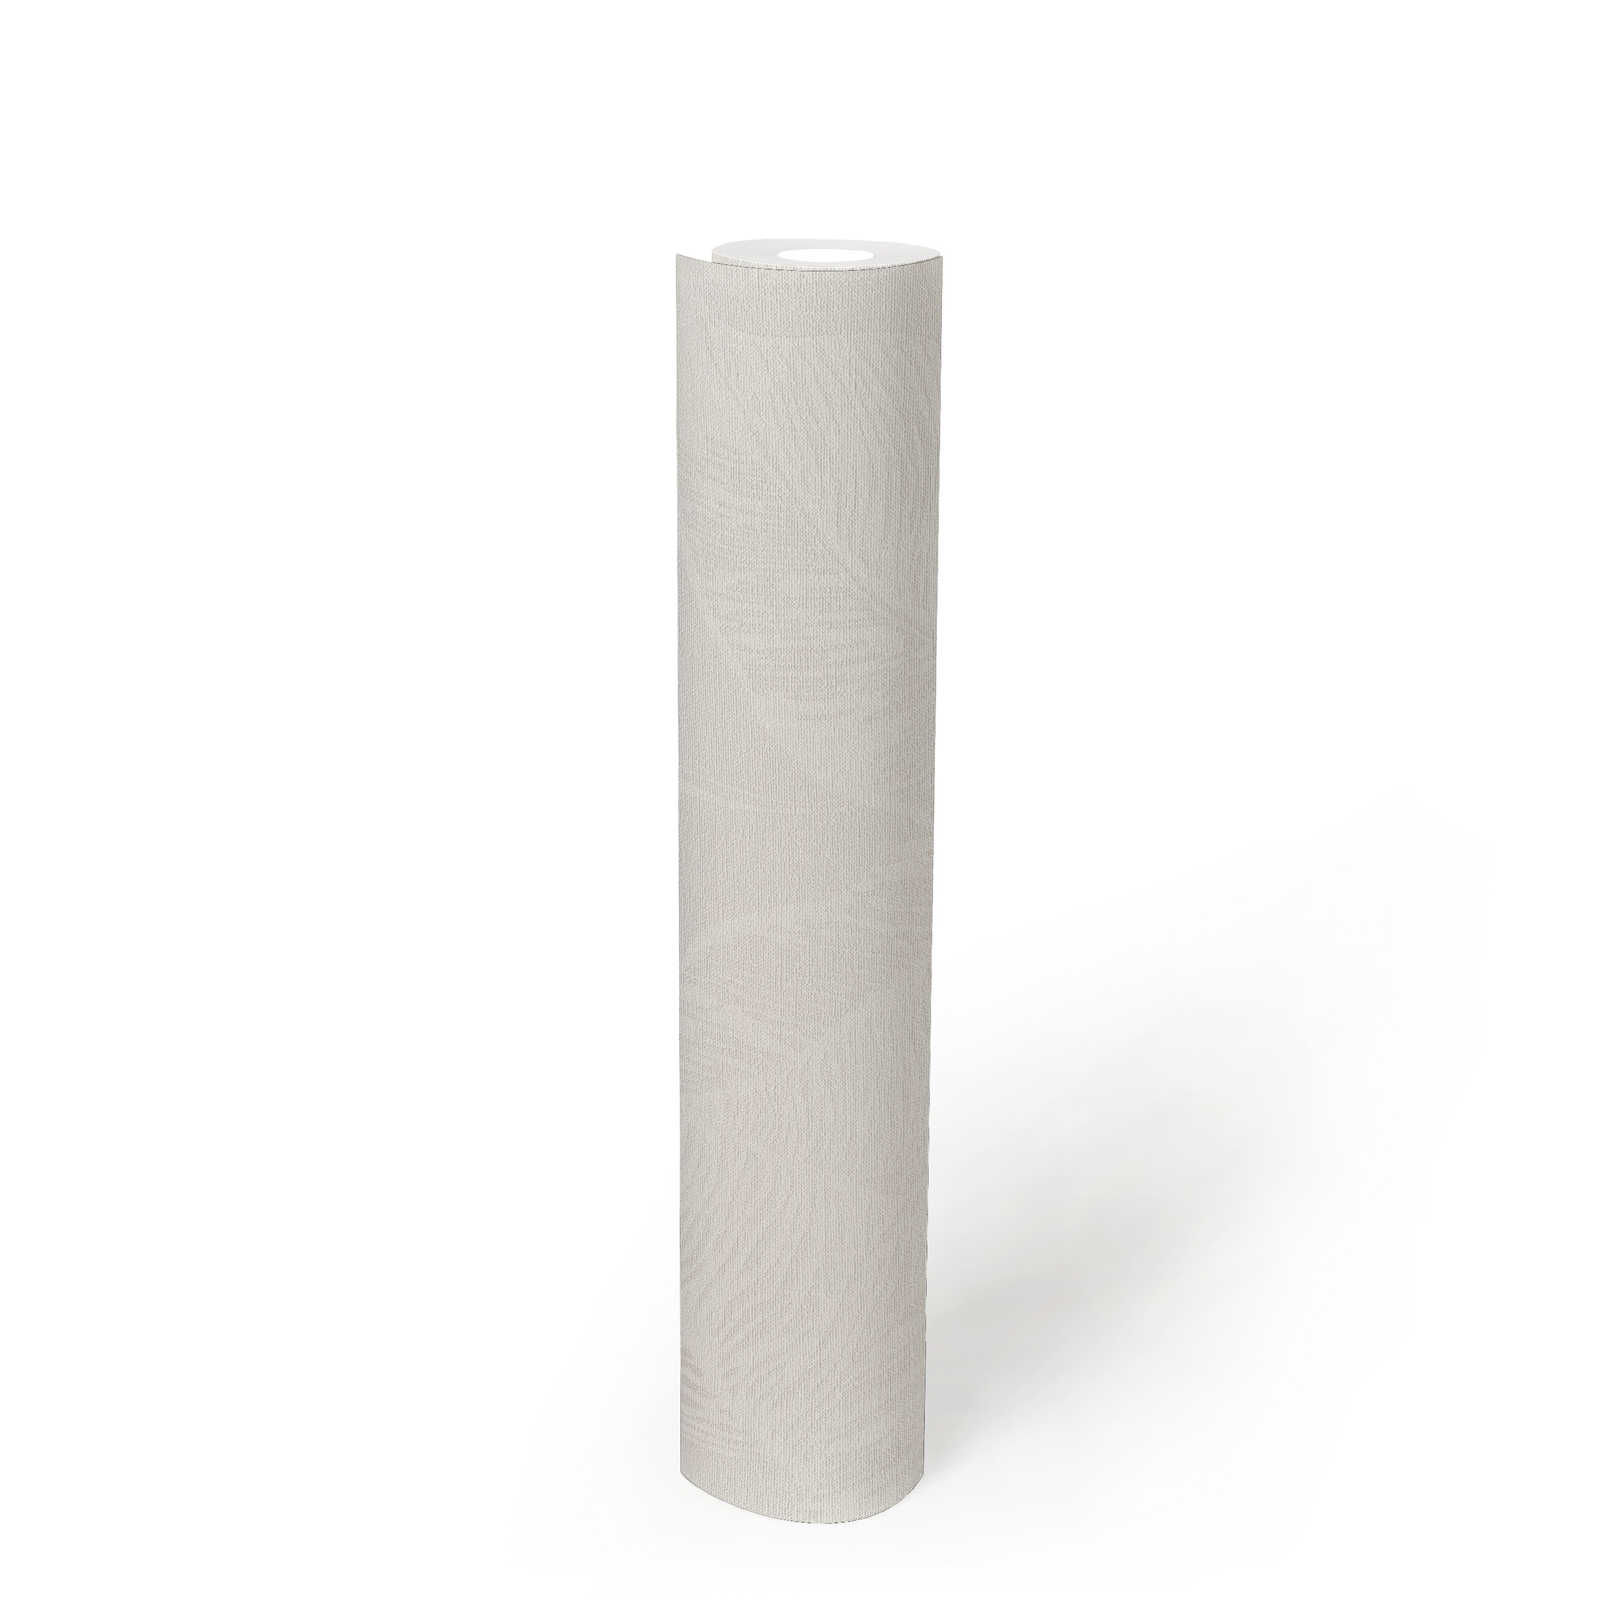             Vliestapete mit Blättern PVC-frei – Weiß, Grau
        